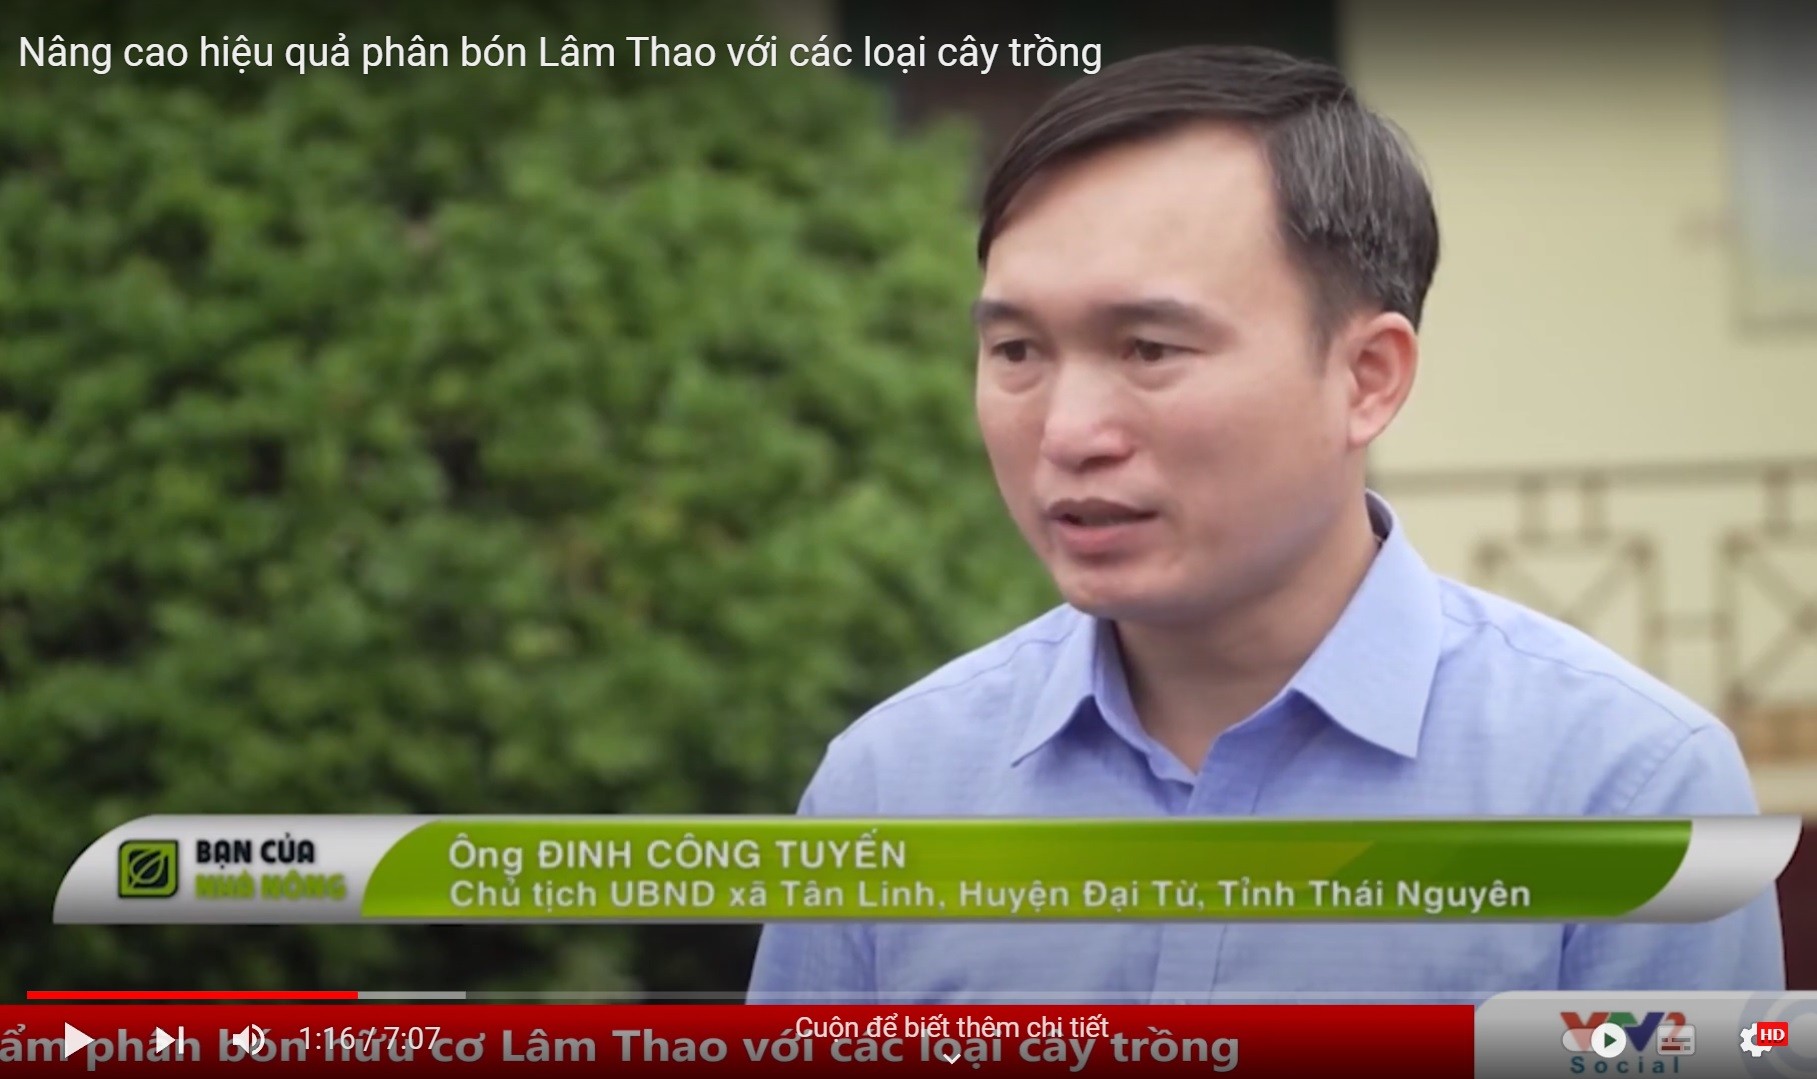 Video: Nâng cao hiệu quả phân bón Lâm Thao với cây trồng